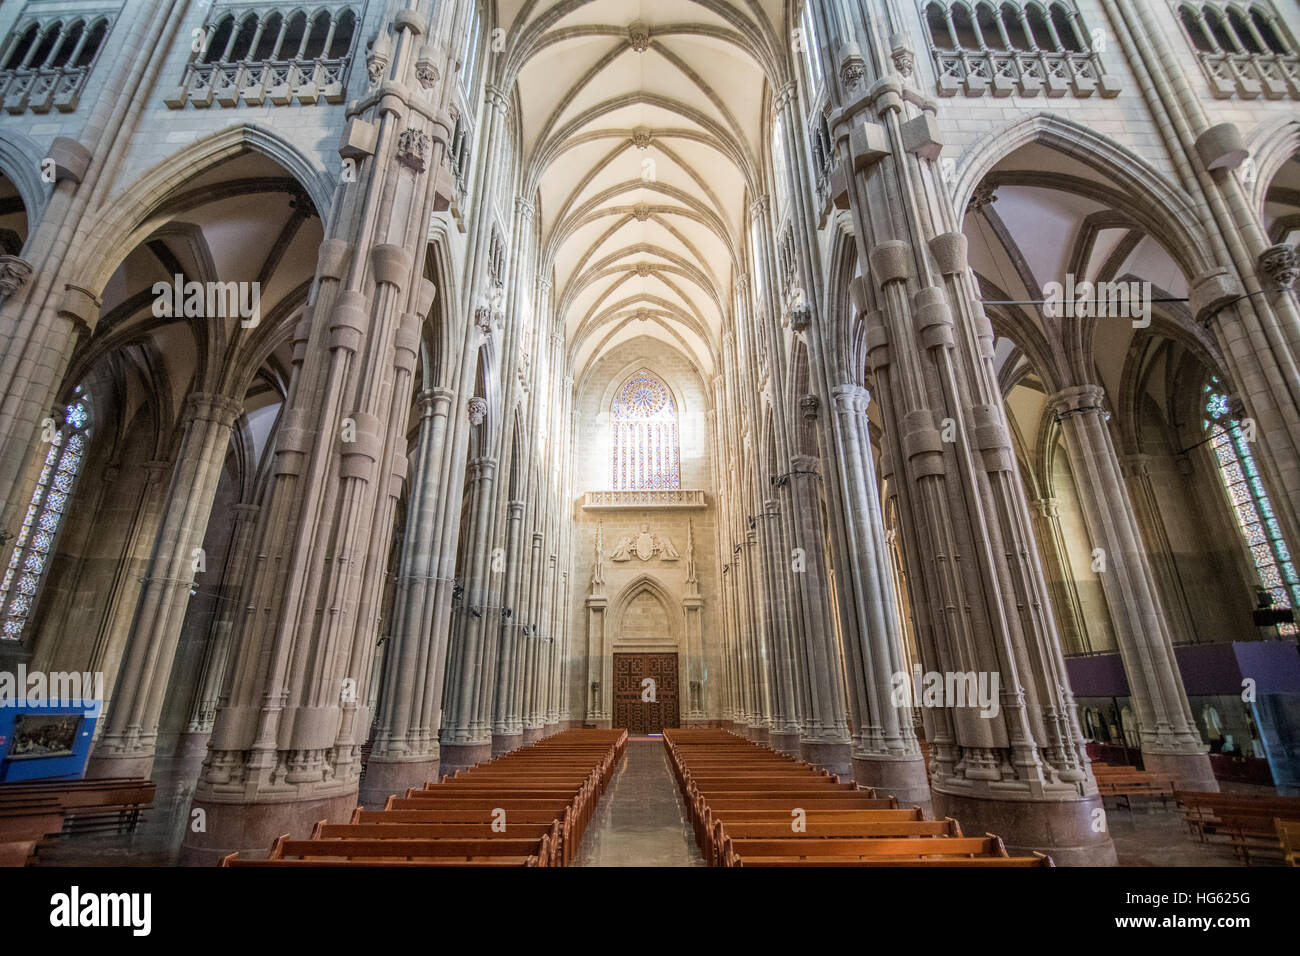 Interno del CCathedral di Maria Immacolata a Vitoria, Spagna, costruito nel XX secolo con alto stile gotico. Foto Stock